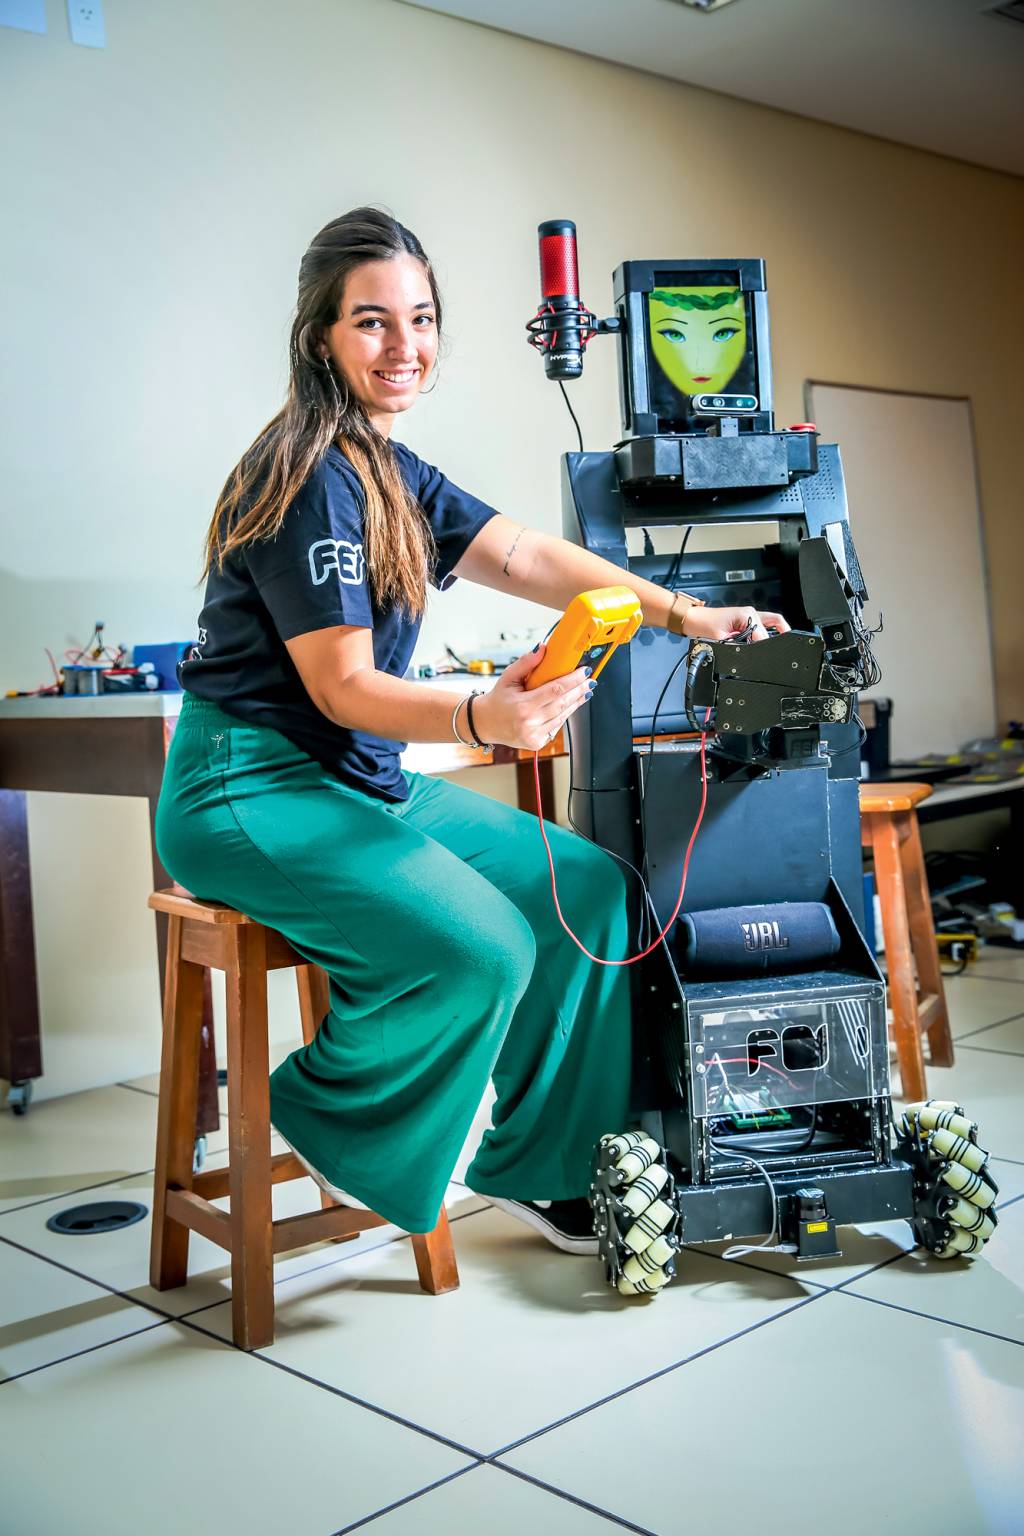 Imagem mostra jovem sentada ao lado de robô que tem tela com rosto. Ela segura aparelho e sorri para a foto